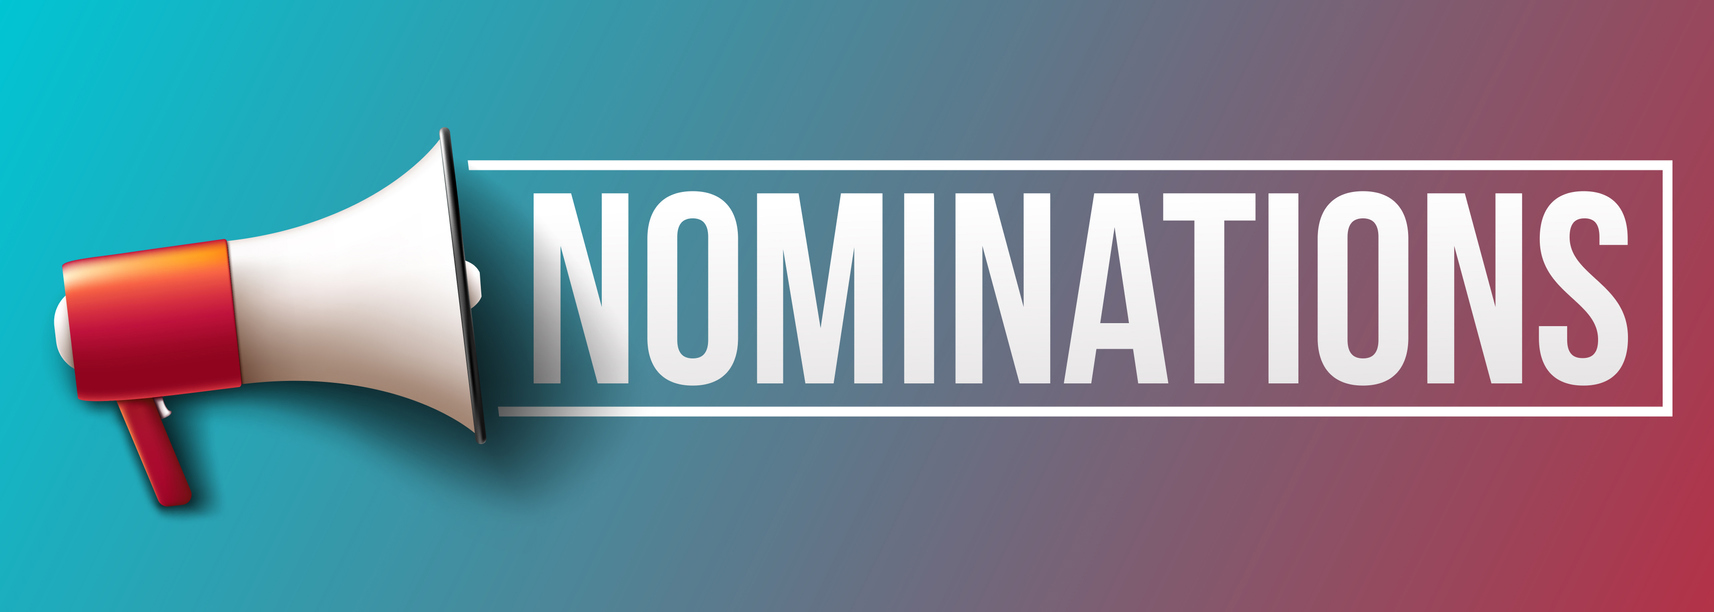 istock_nominations.jpg